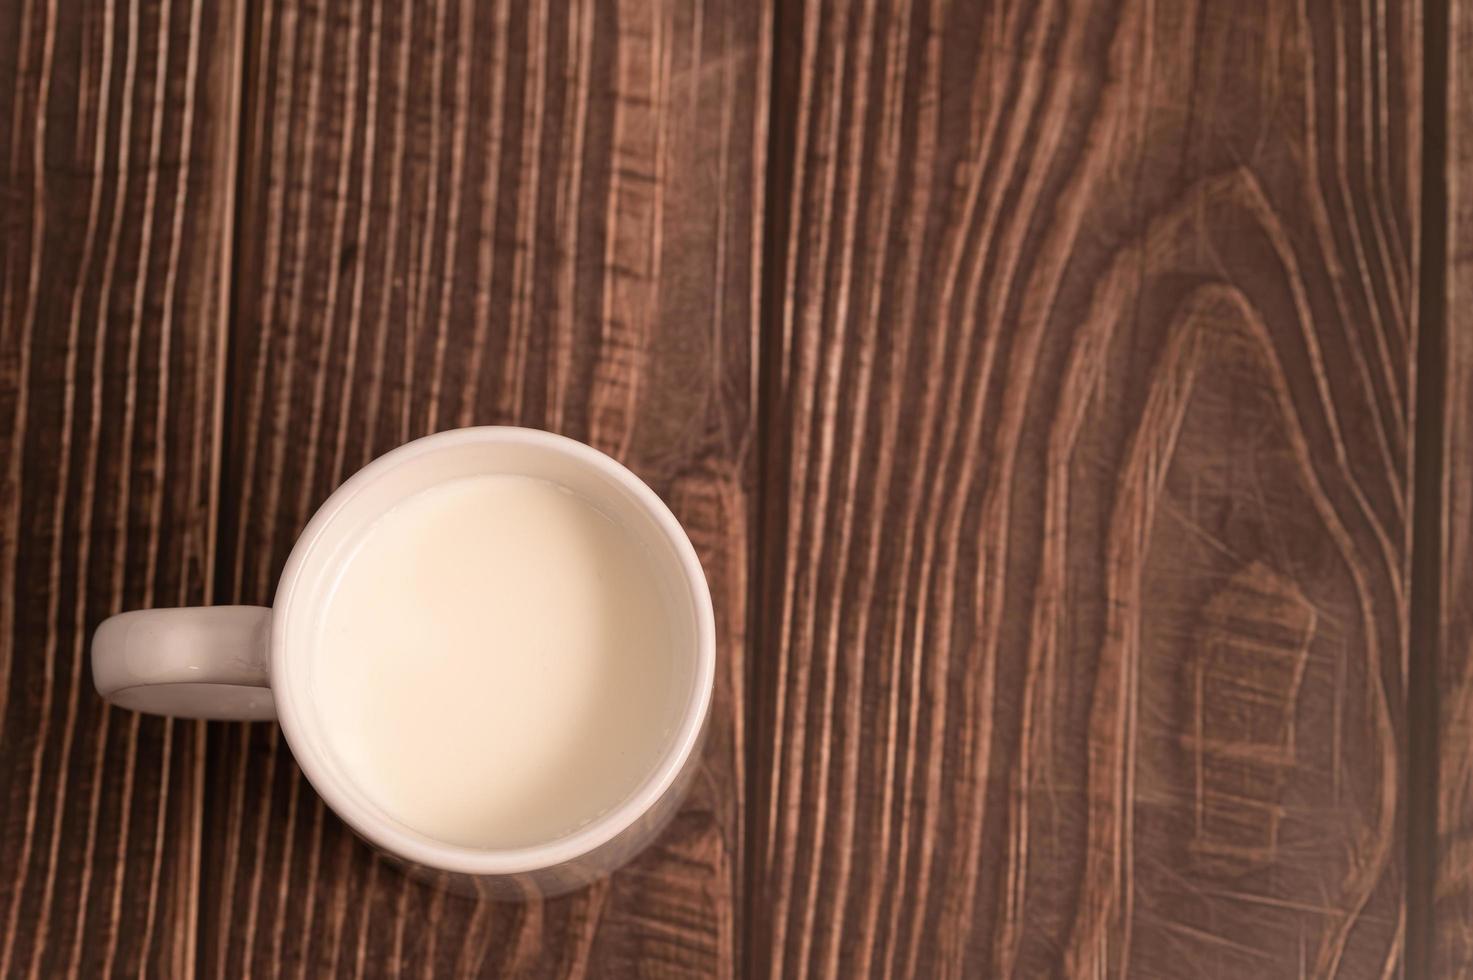 día mundial de la leche, beba leche saludable para un cuerpo fuerte foto